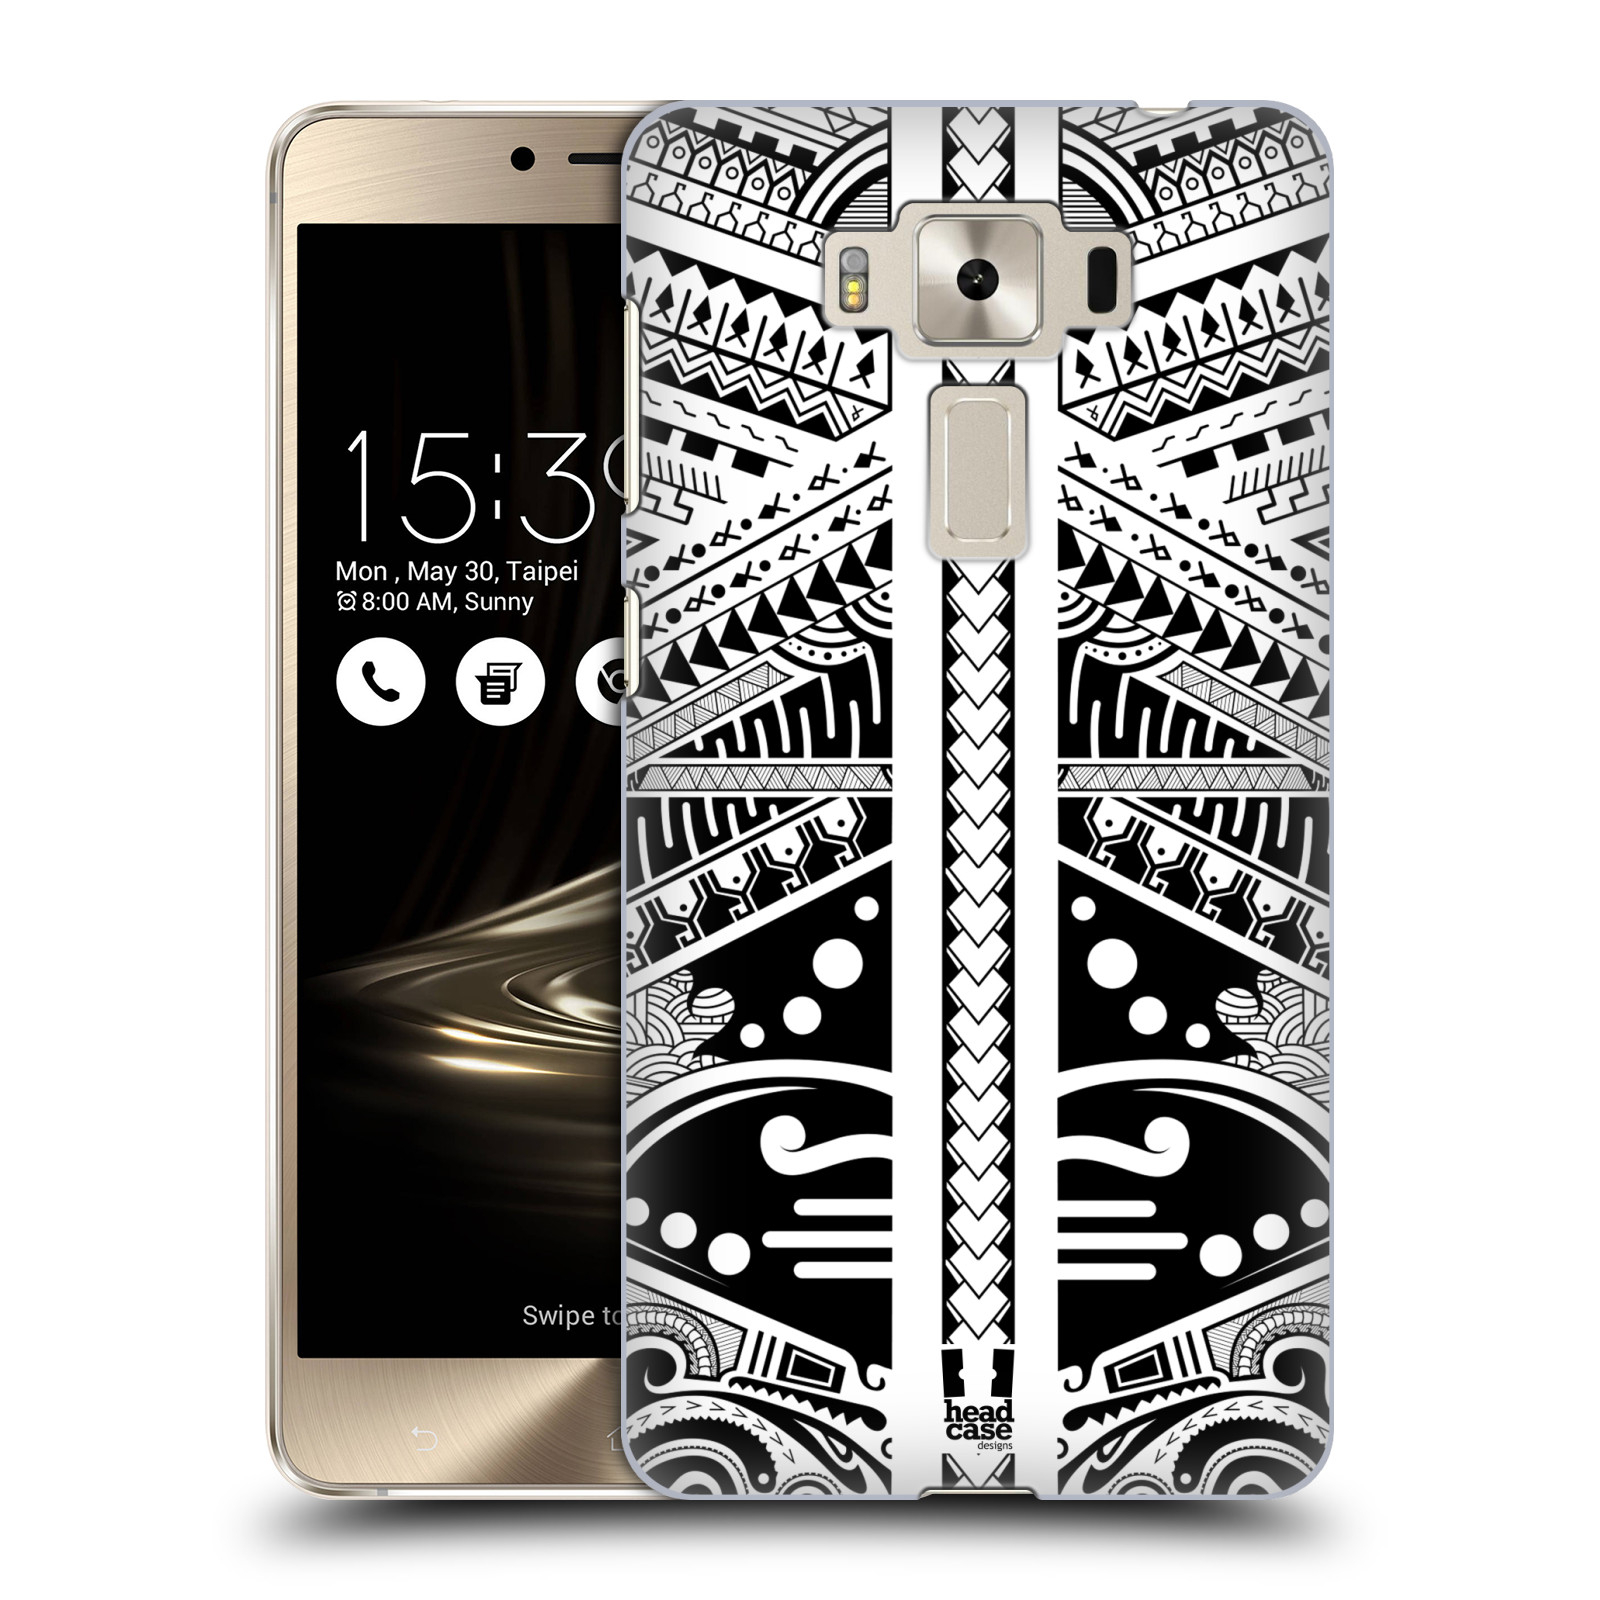 HEAD CASE plastový obal na mobil Asus Zenfone 3 DELUXE ZS550KL vzor Maorské tetování motivy černá a bílá POLYNÉZIE